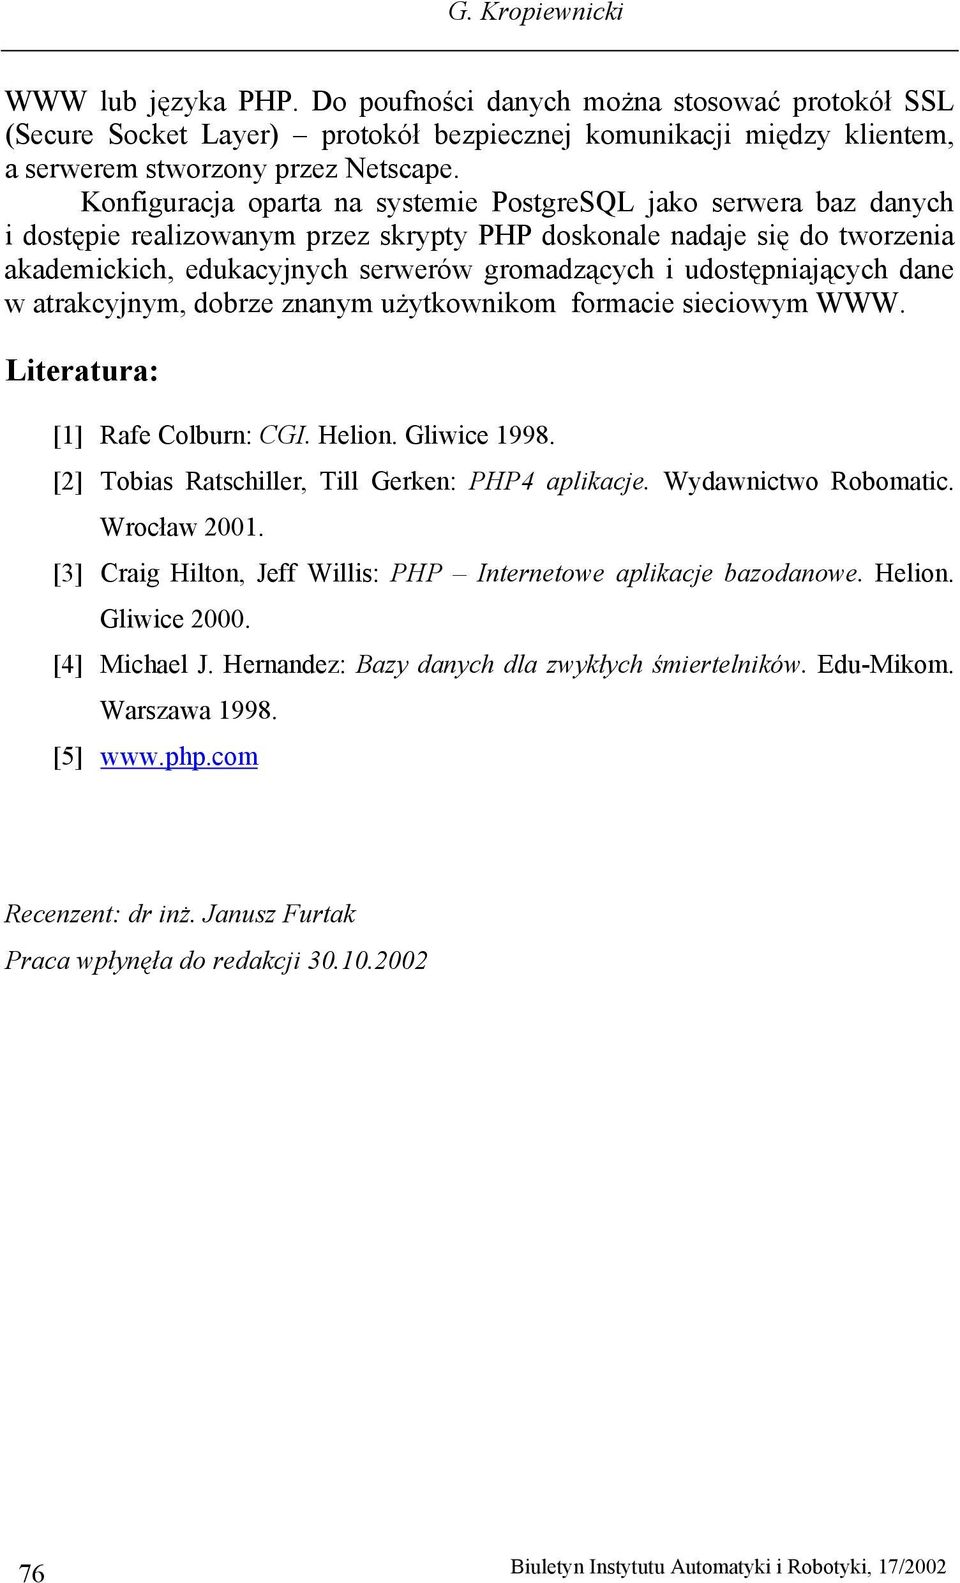 udostępniających dane w atrakcyjnym, dobrze znanym użytkownikom formacie sieciowym WWW. Literatura: [1] Rafe Colburn: CGI. Helion. Gliwice 1998. [2] Tobias Ratschiller, Till Gerken: PHP4 aplikacje.